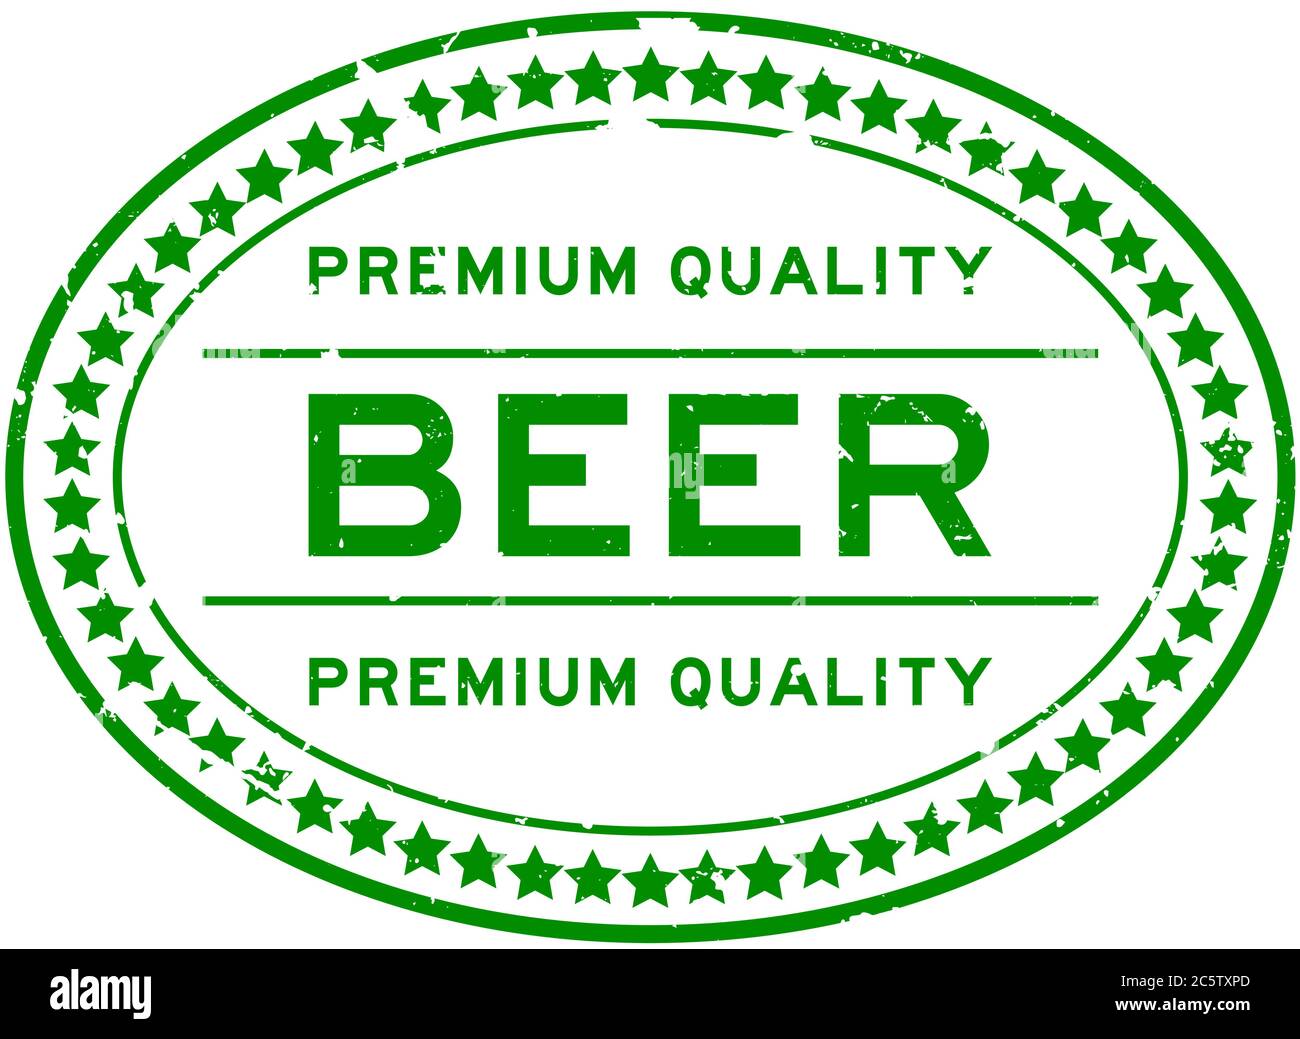 Grunge grün Premium-Qualität Bier Wort oval Gummi Siegel Stempel auf weißem Hintergrund Stock Vektor